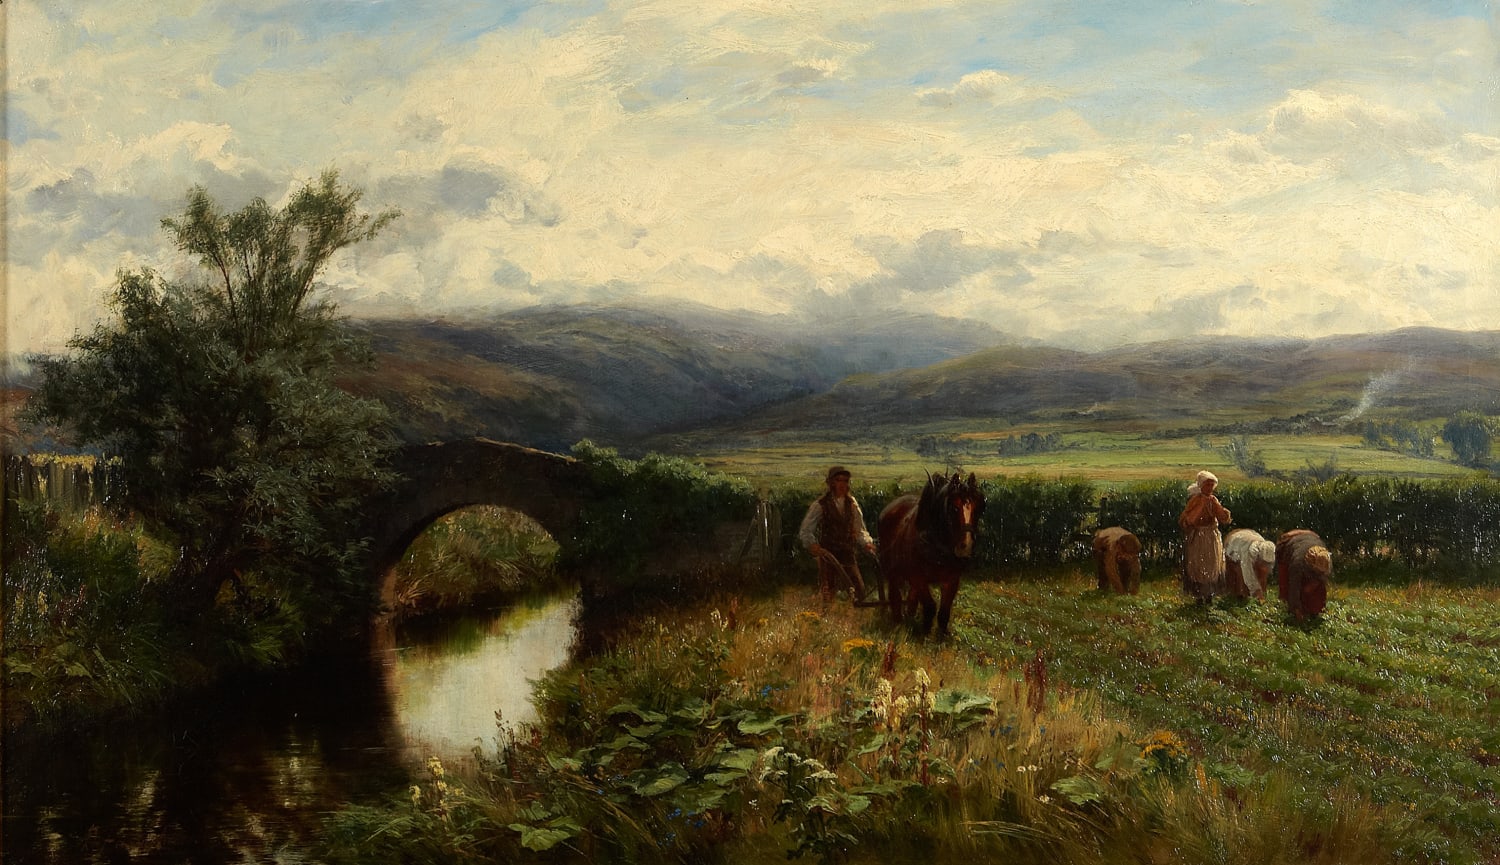 David Farquharson ARSA (1840-1907), The Banks o' Allan Water (aka The Last Furrow)  Oil on canvas, 1877, 53.5 x 91.1cm  Bequest Miss Macnaughton, Perth ( 1914) 1996.043